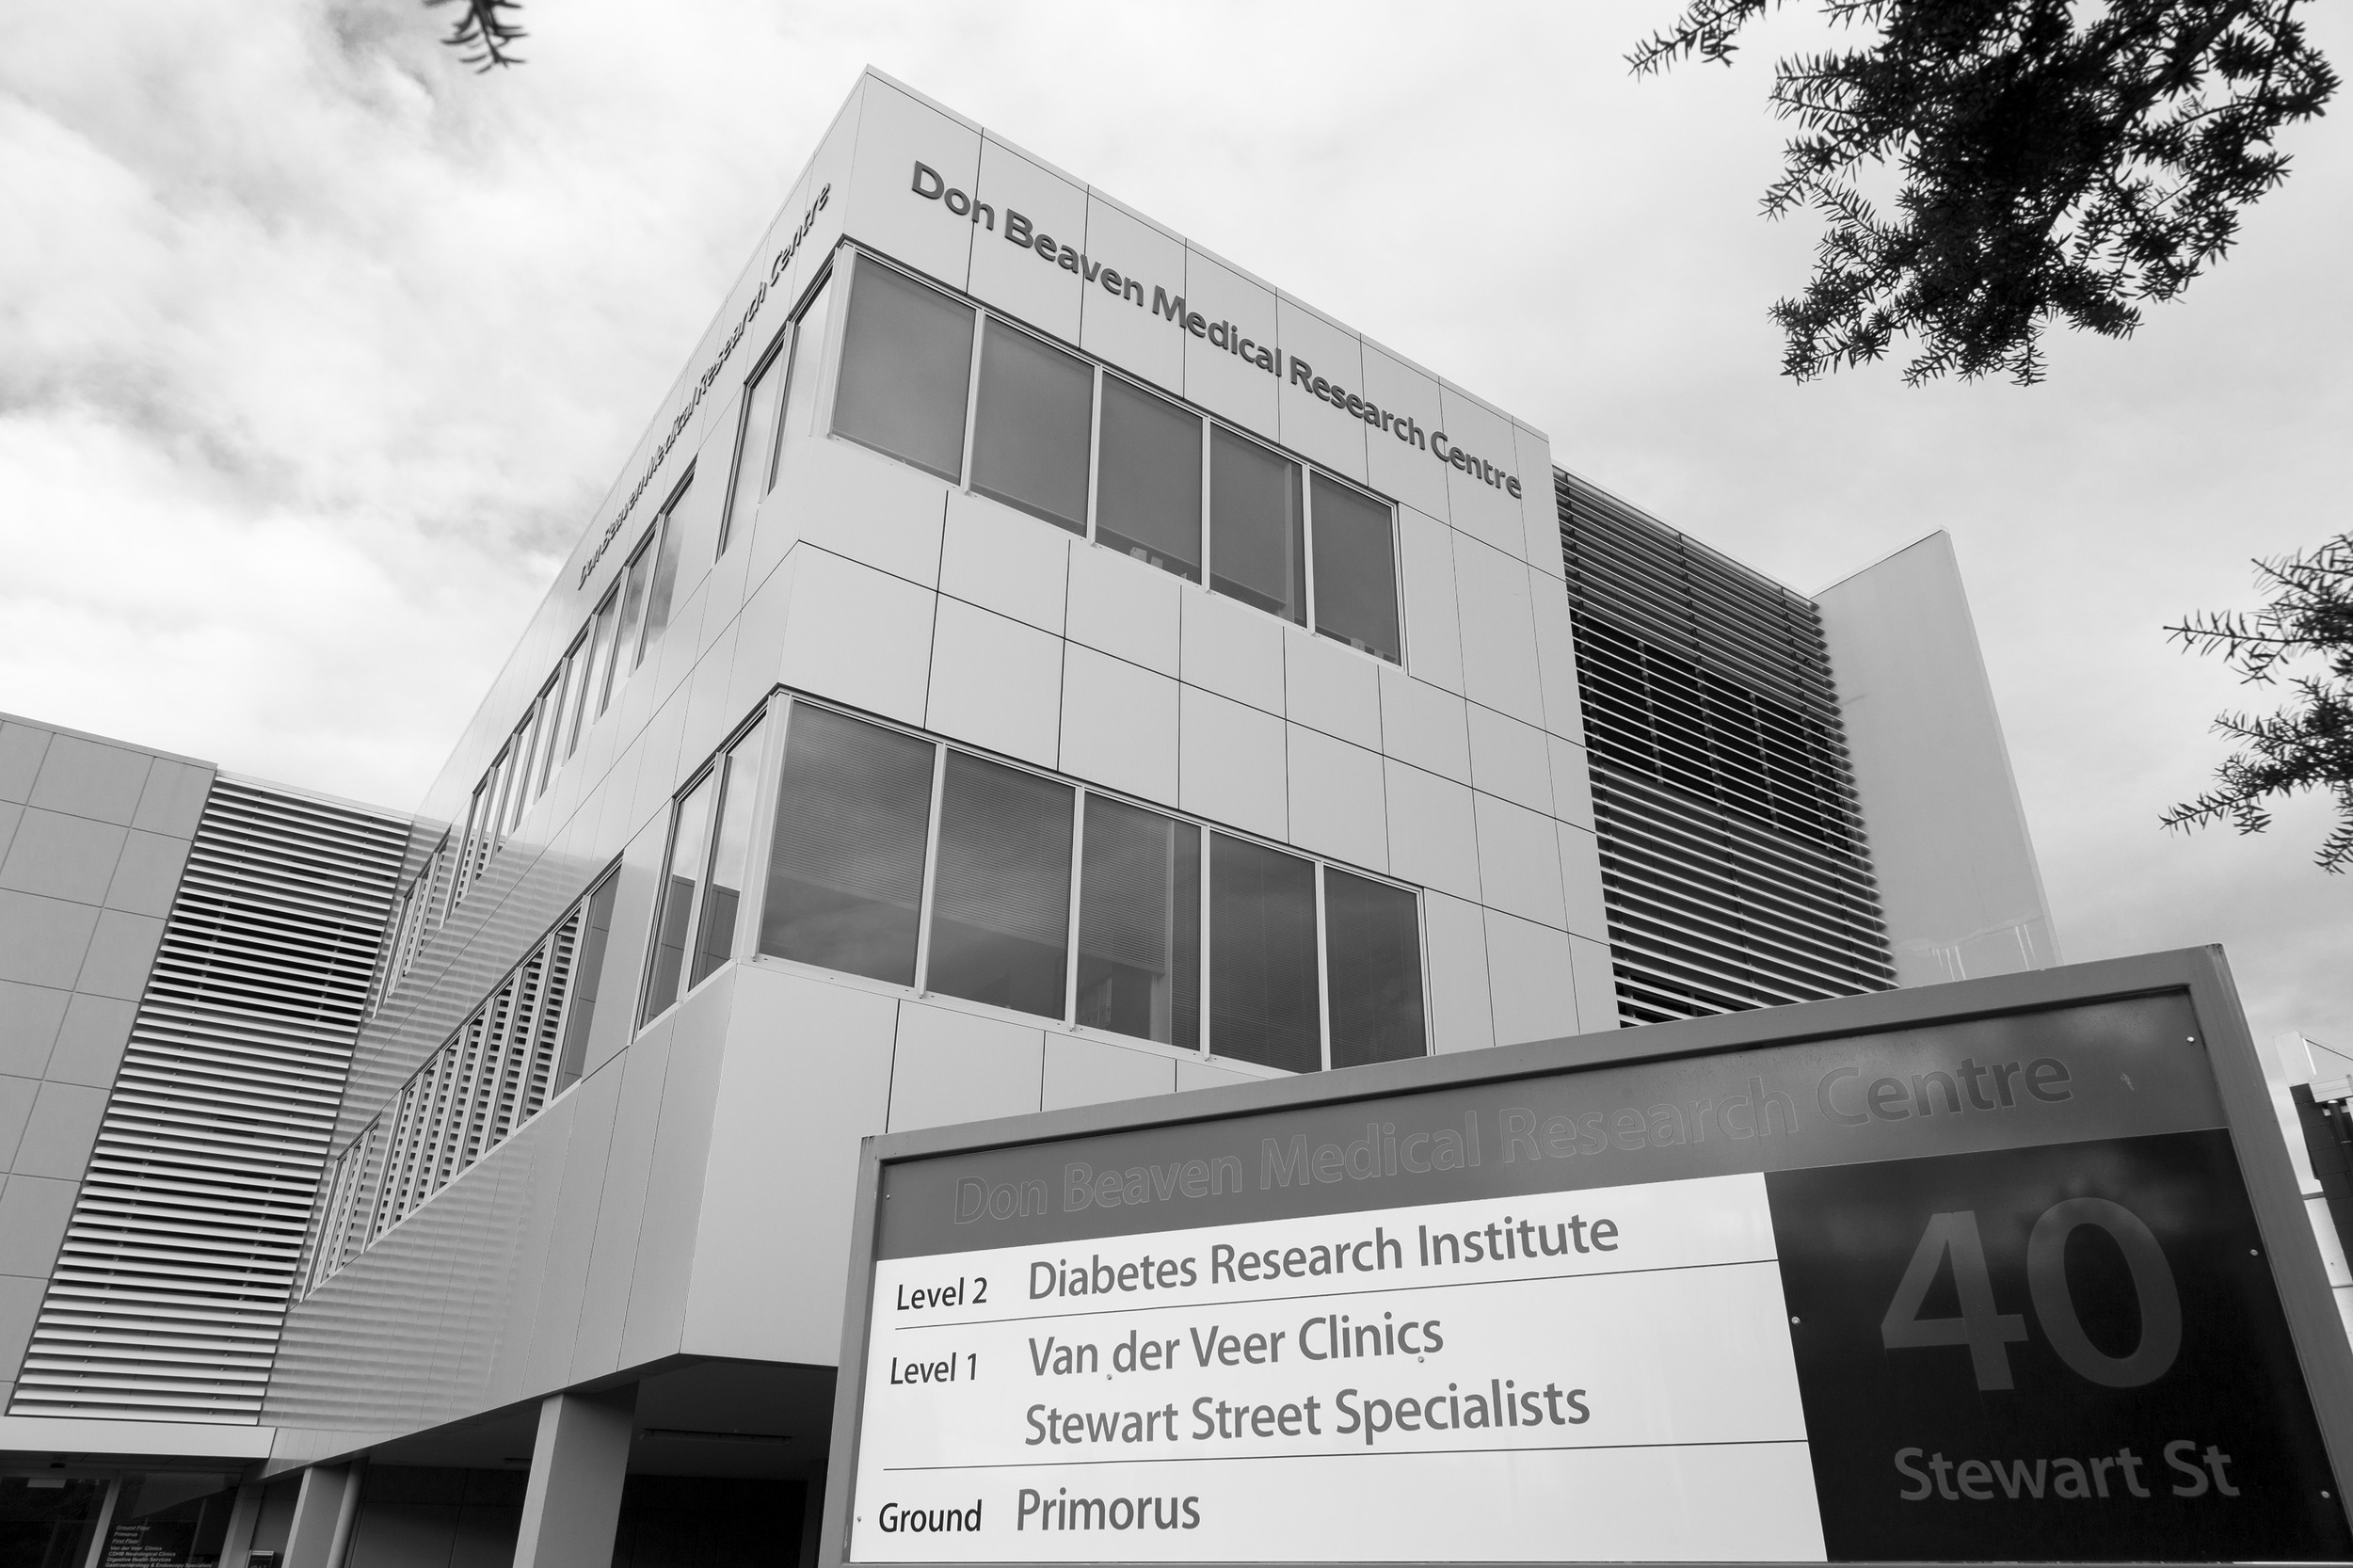 Don Beaven Medical Research Centre, 40 Stewart Street, Christchurch